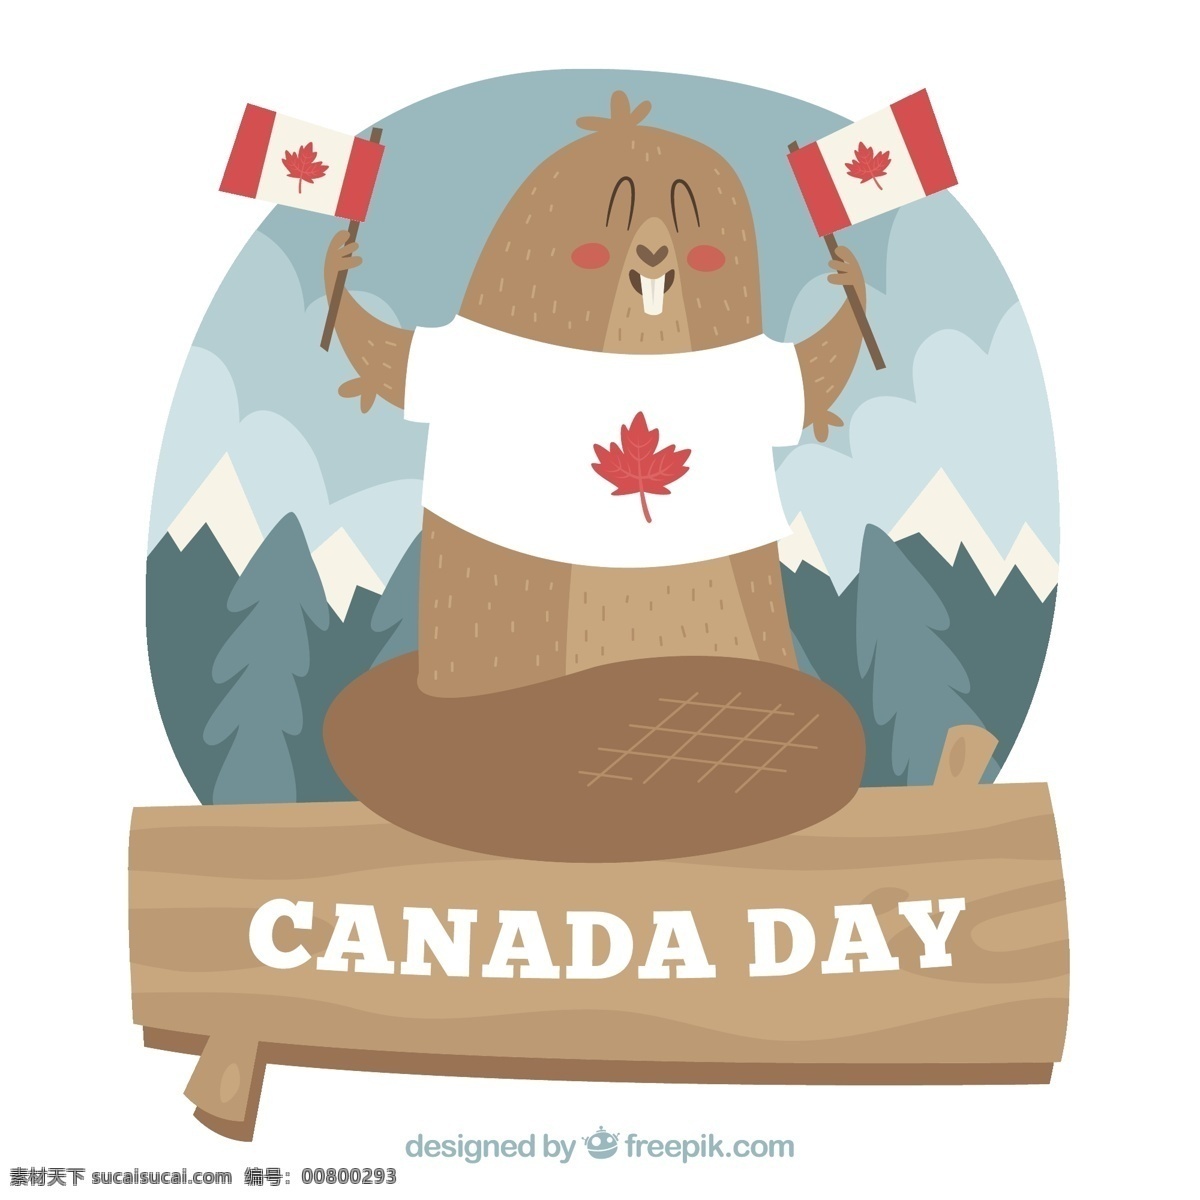 加拿大 日 背景 海狸 树叶 墙纸 庆典 节日 事件 庆祝 文化 自由 国家 独立日 国庆日 爱国 独立